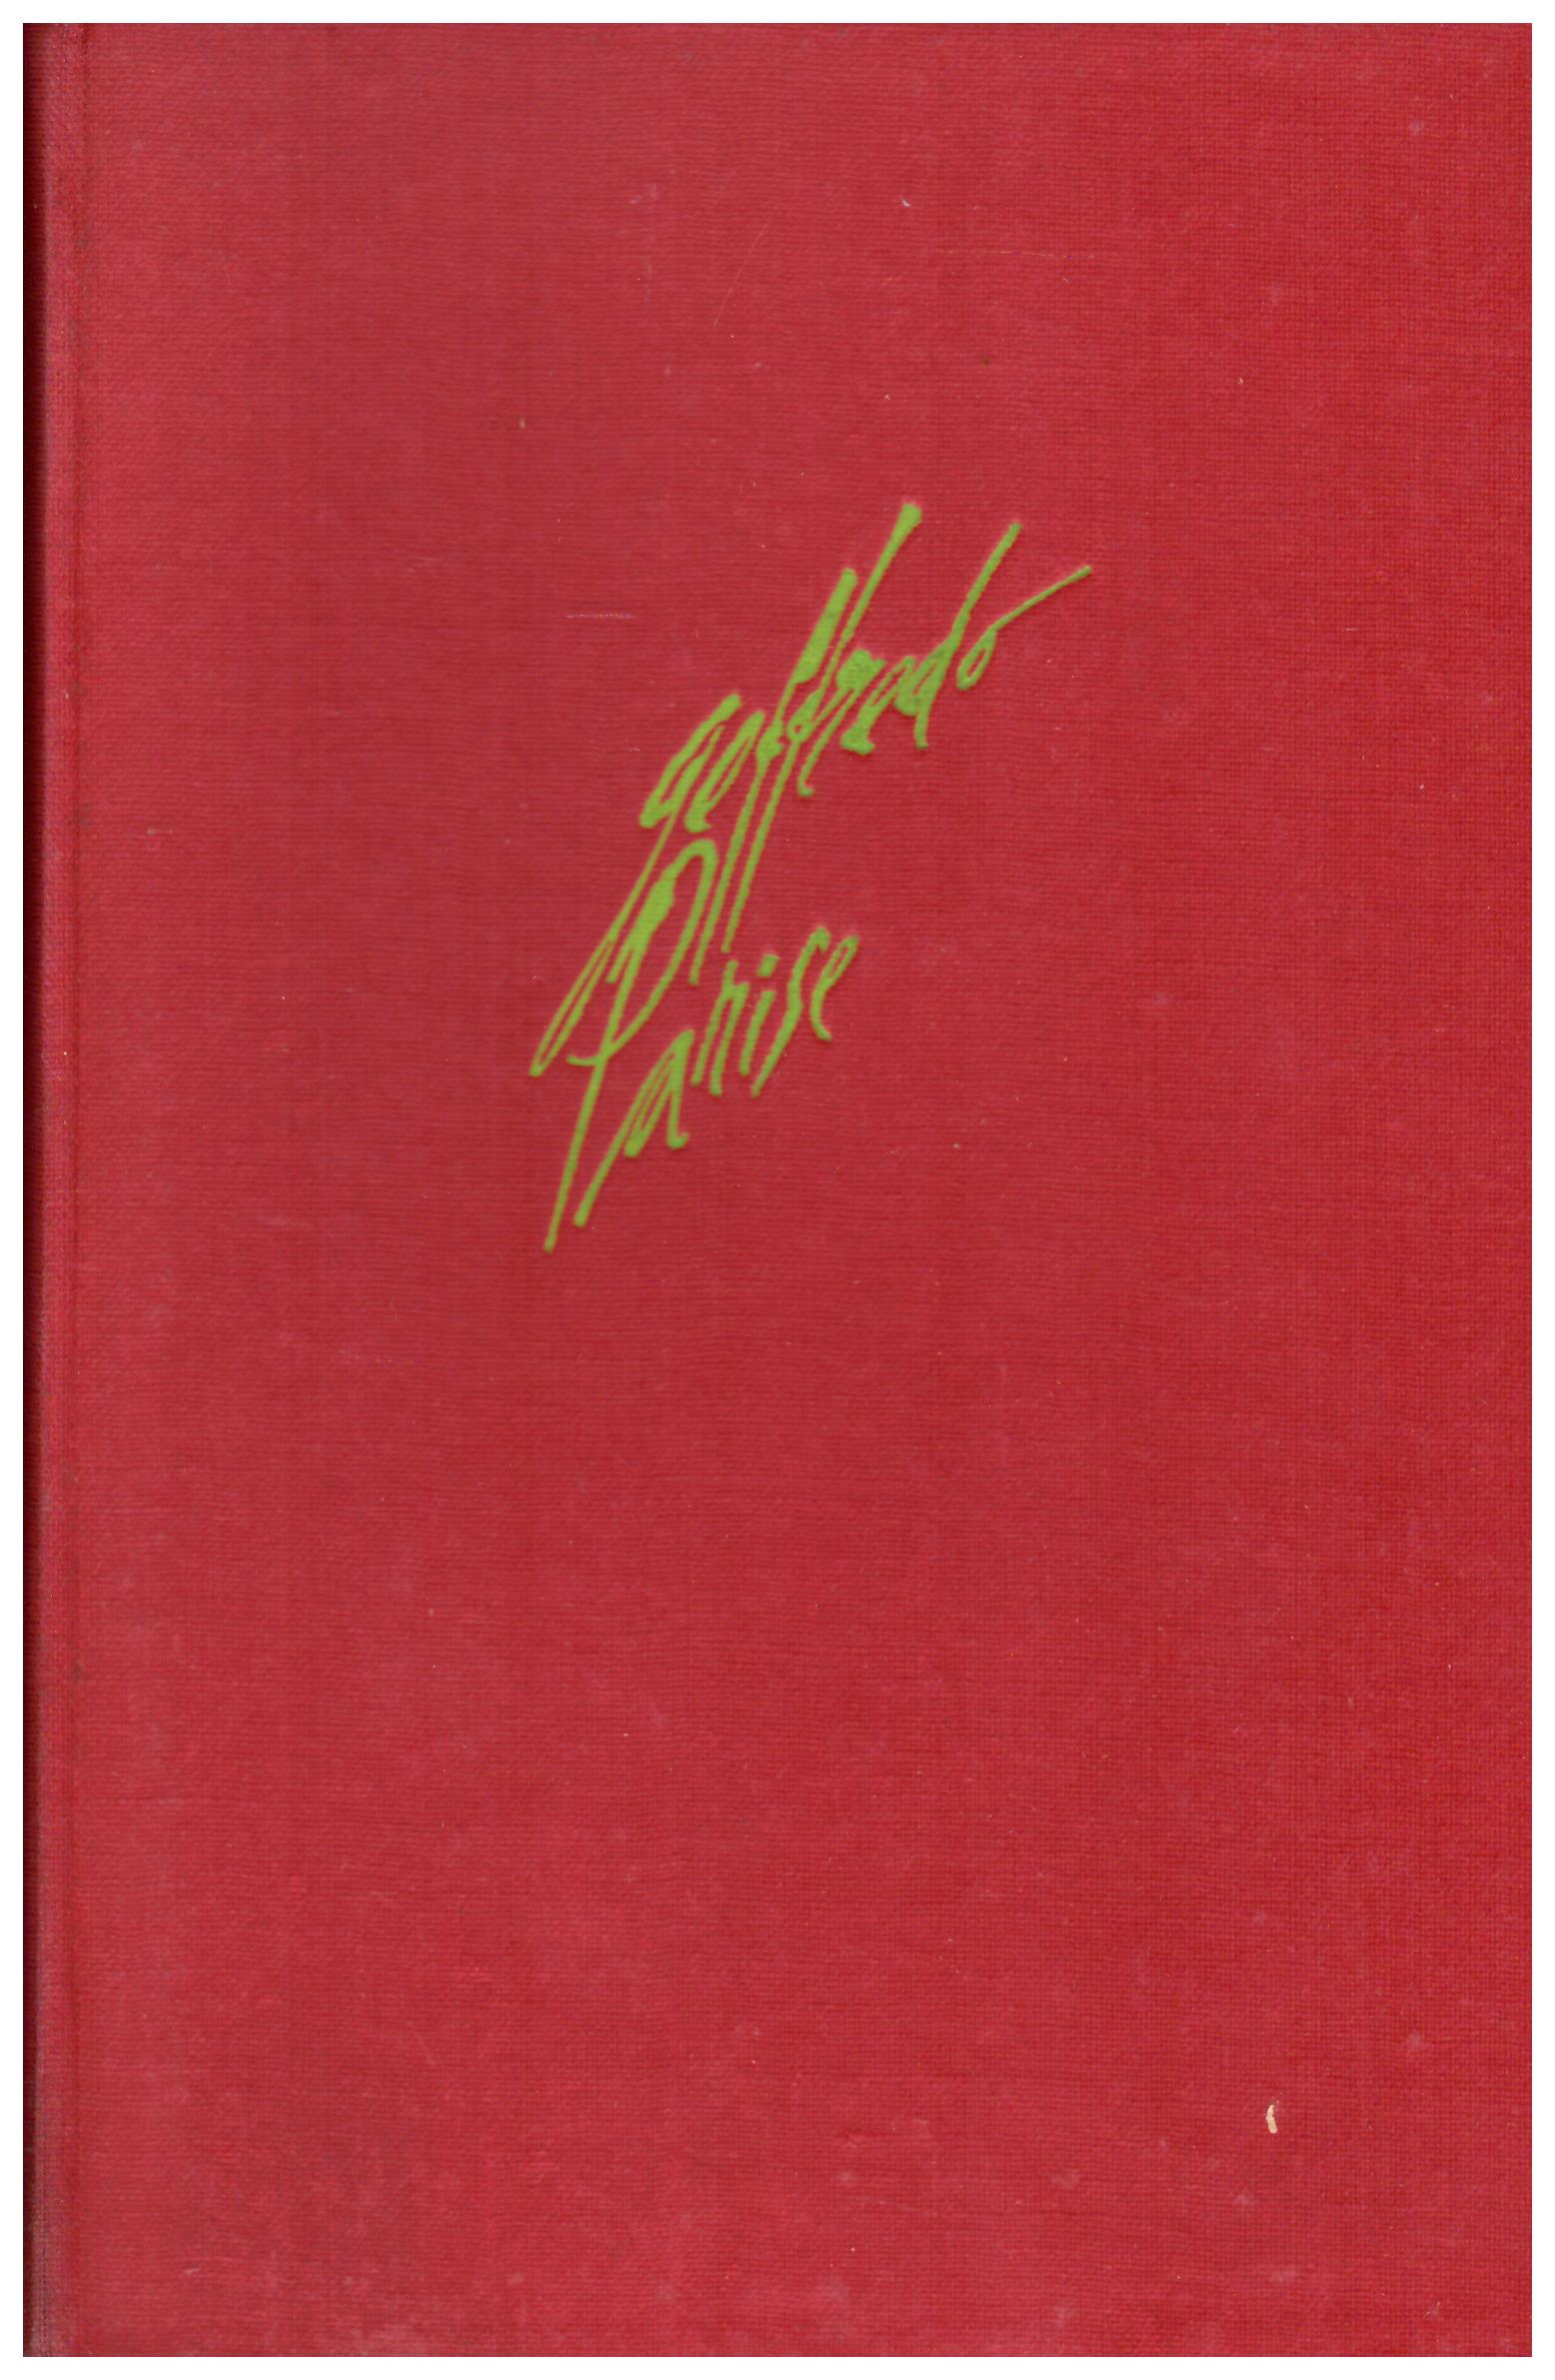 Titolo: Il prete bello  Autore: Goffredo Parise  Editore: Garzanti 1954